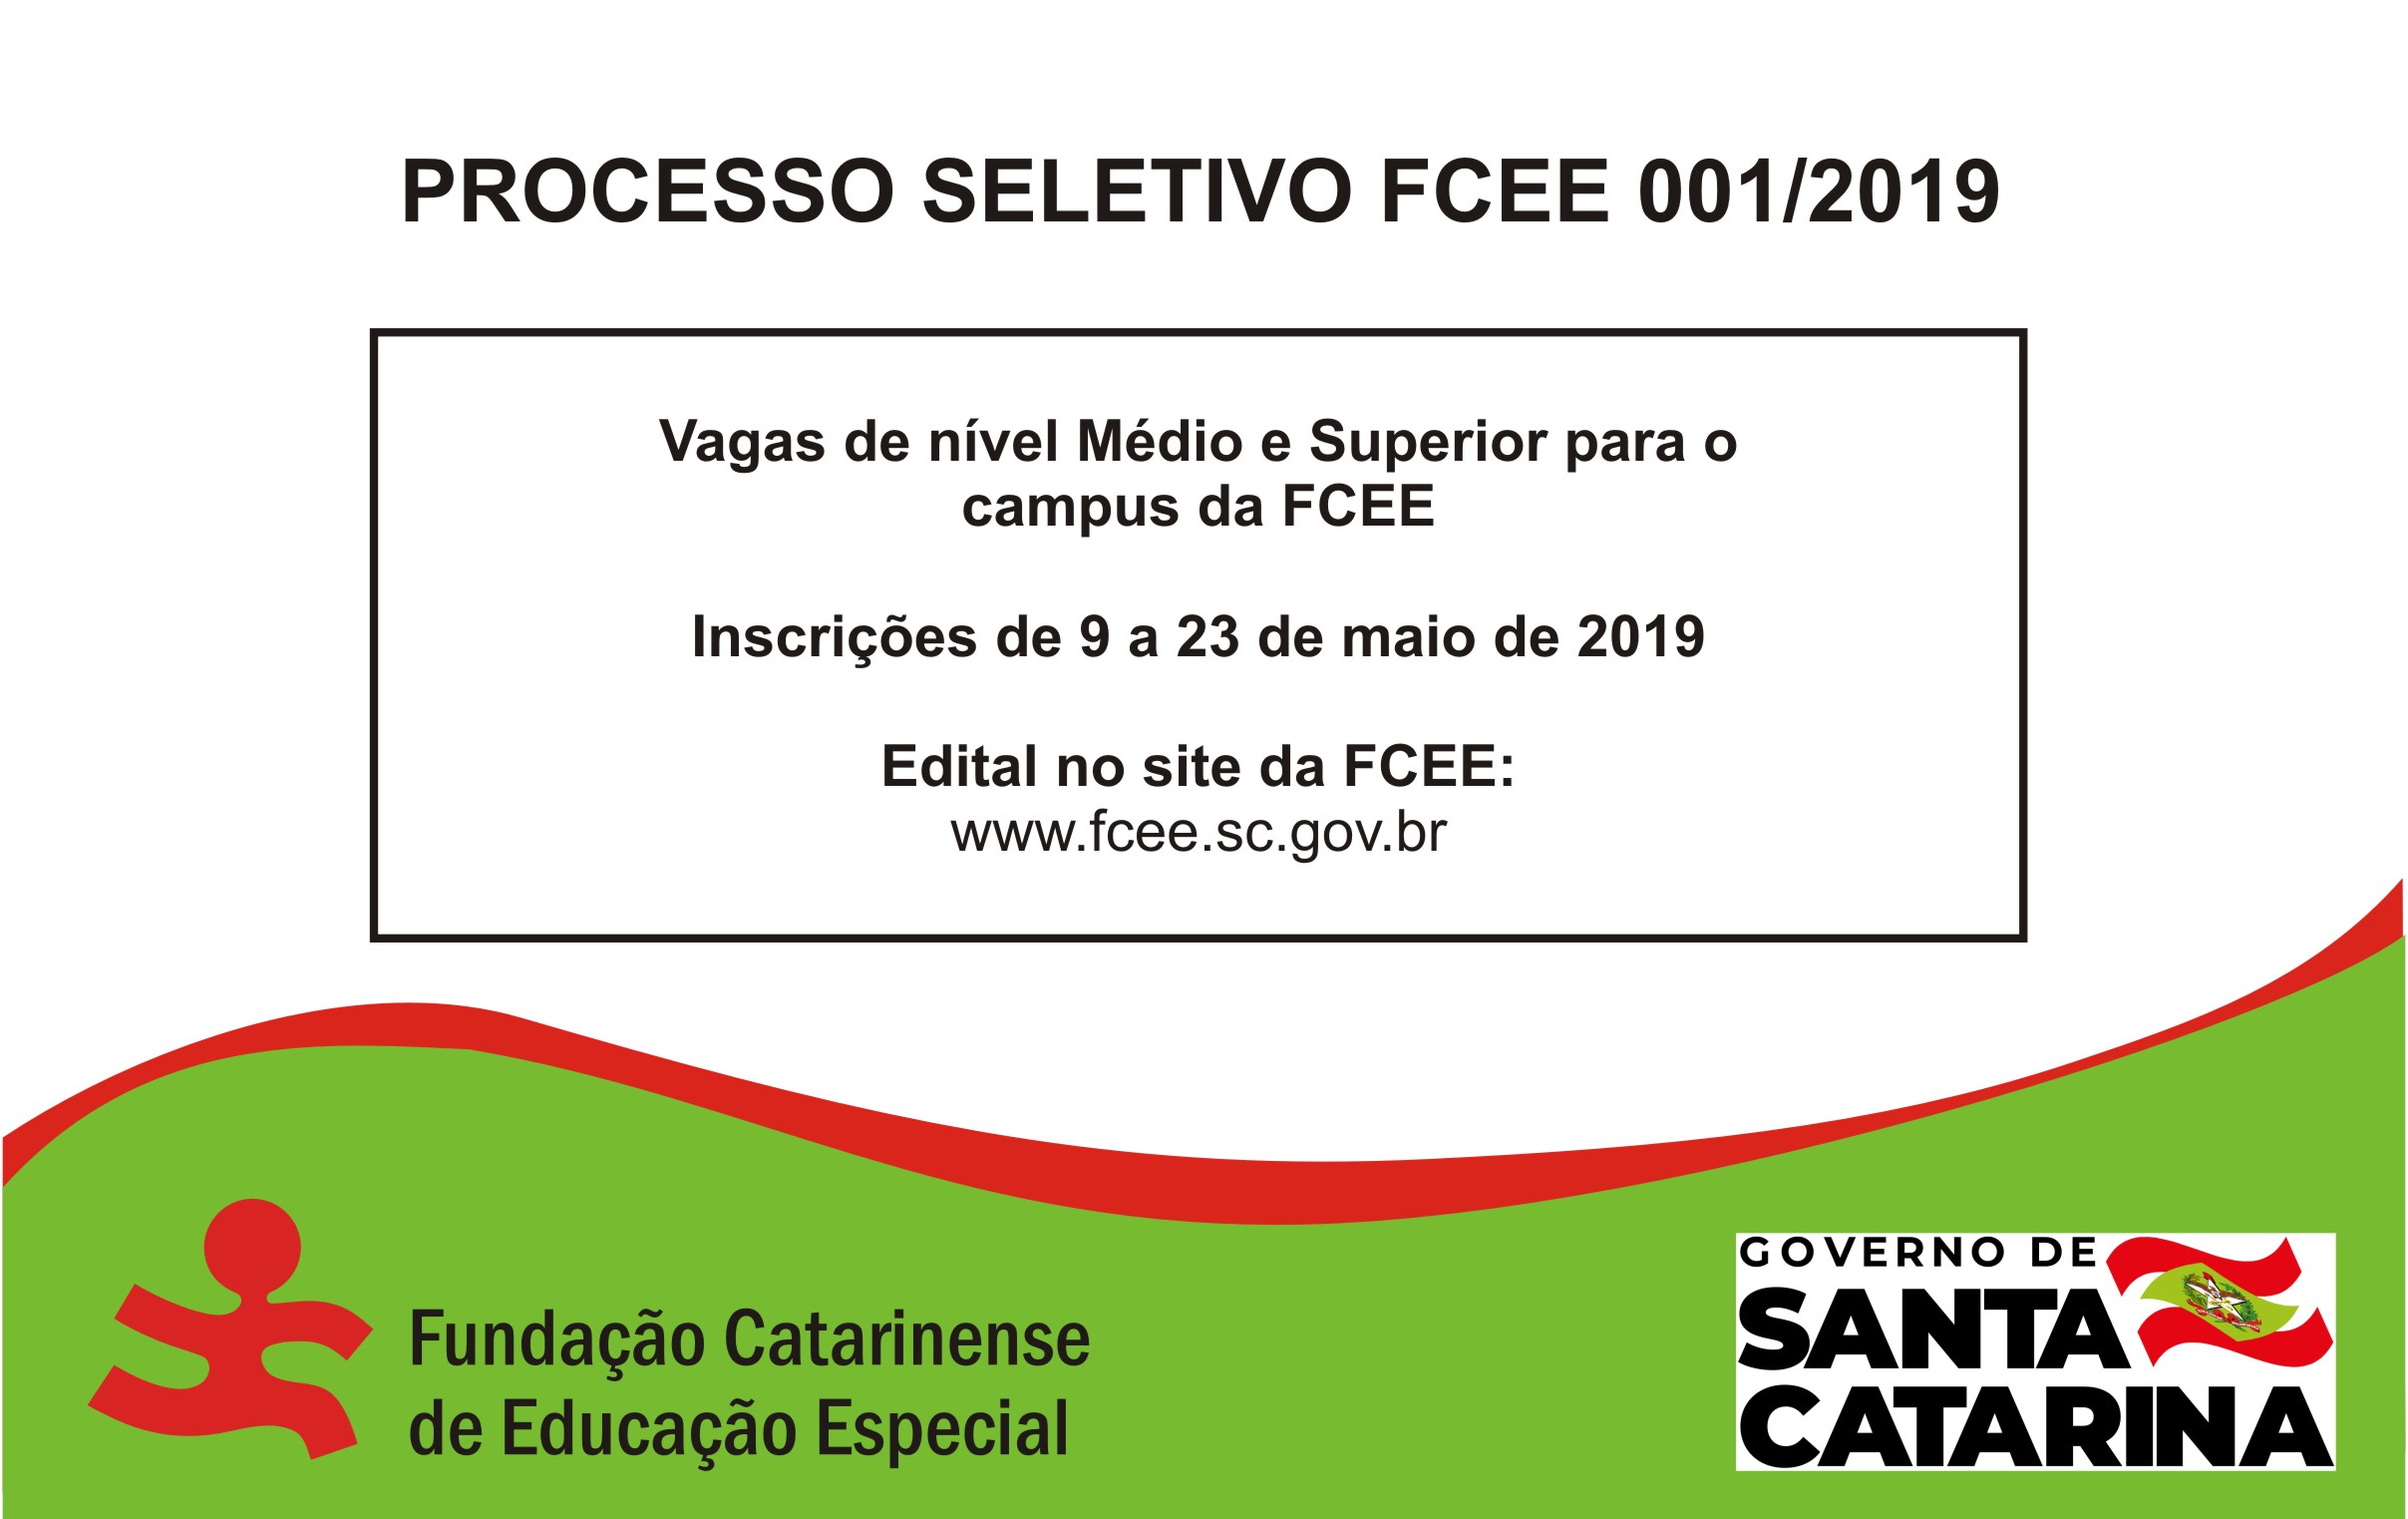 Banner com a frase: Processo Seletivo FCEE 001/2019 - Vagas de nível Médio e Superior para o campus da FCEE  Inscrições de 9 a 23 de maio de 2019  Edital no site da FCEE  www.fcee.sc.gov.br  